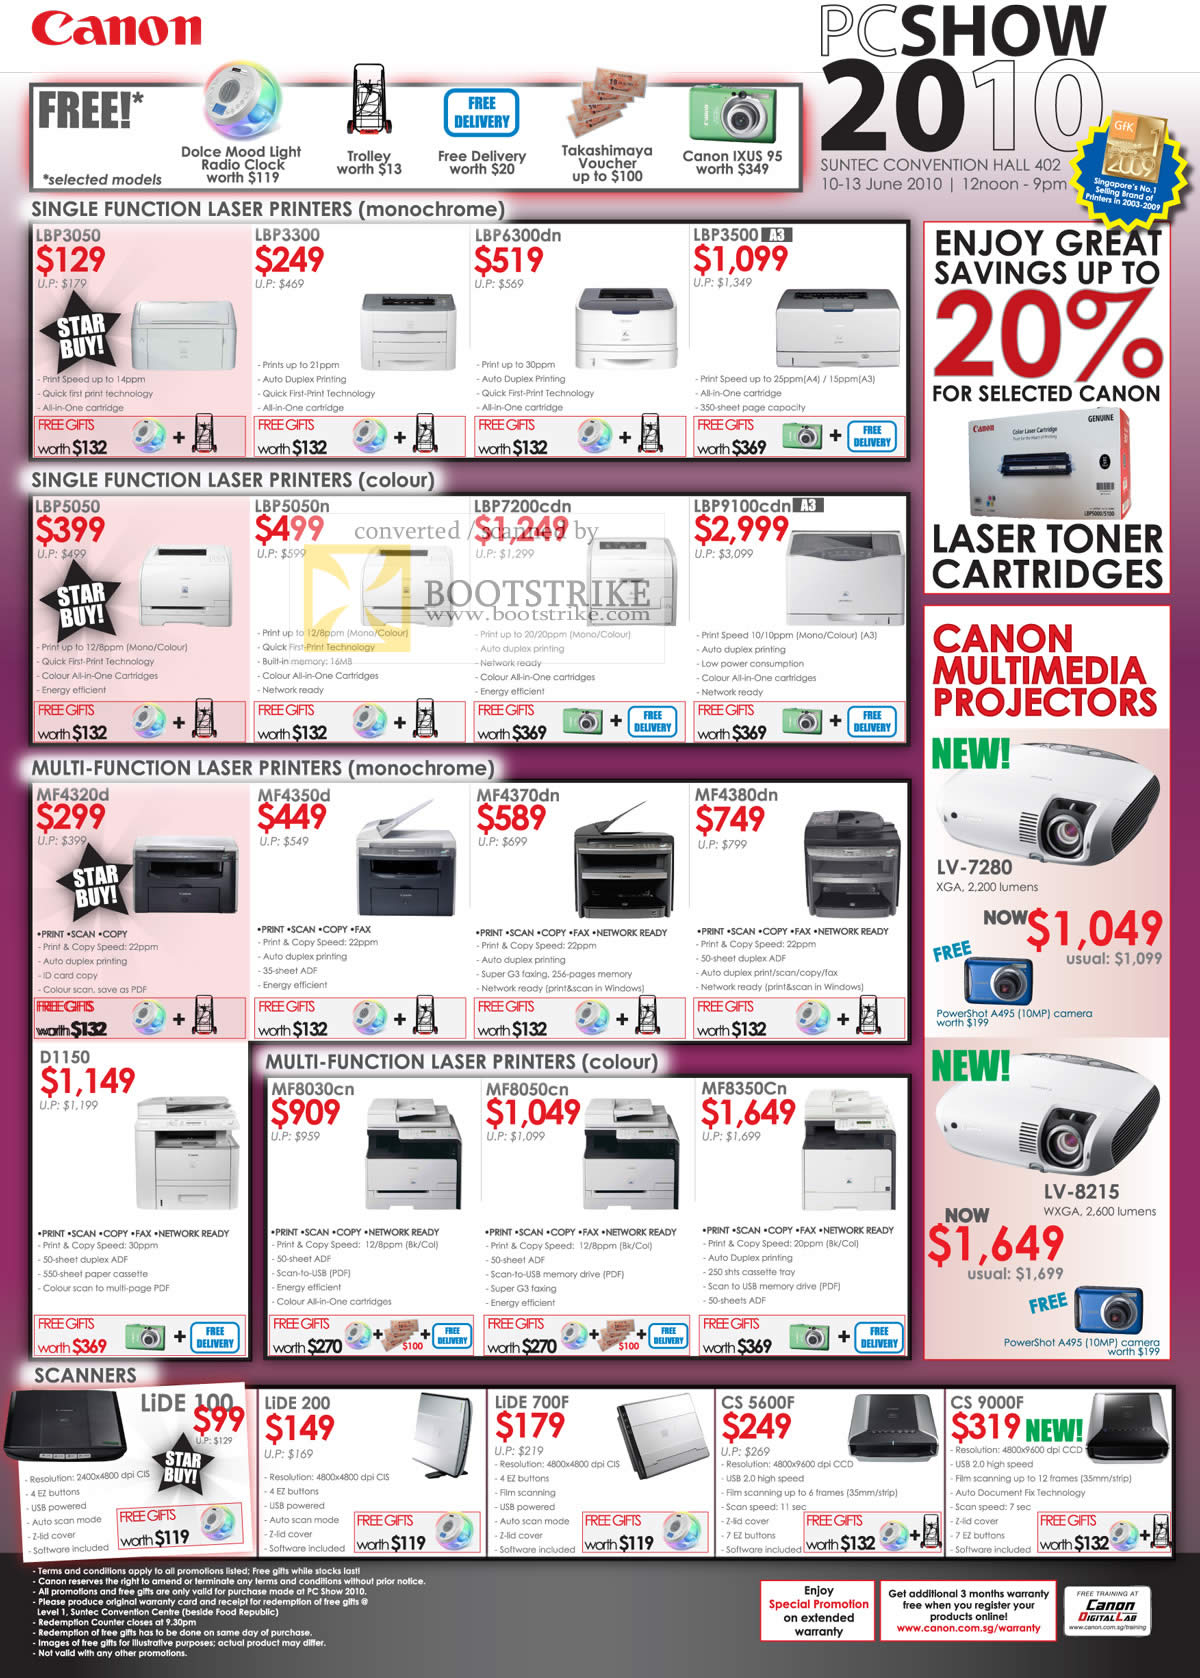 PC Show 2010 price list image brochure of Canon Laser Printers LBP3050 LBP5050 MF4320d Colour Monochrome MF8030cn Scanner Lide 100 CS 9000F